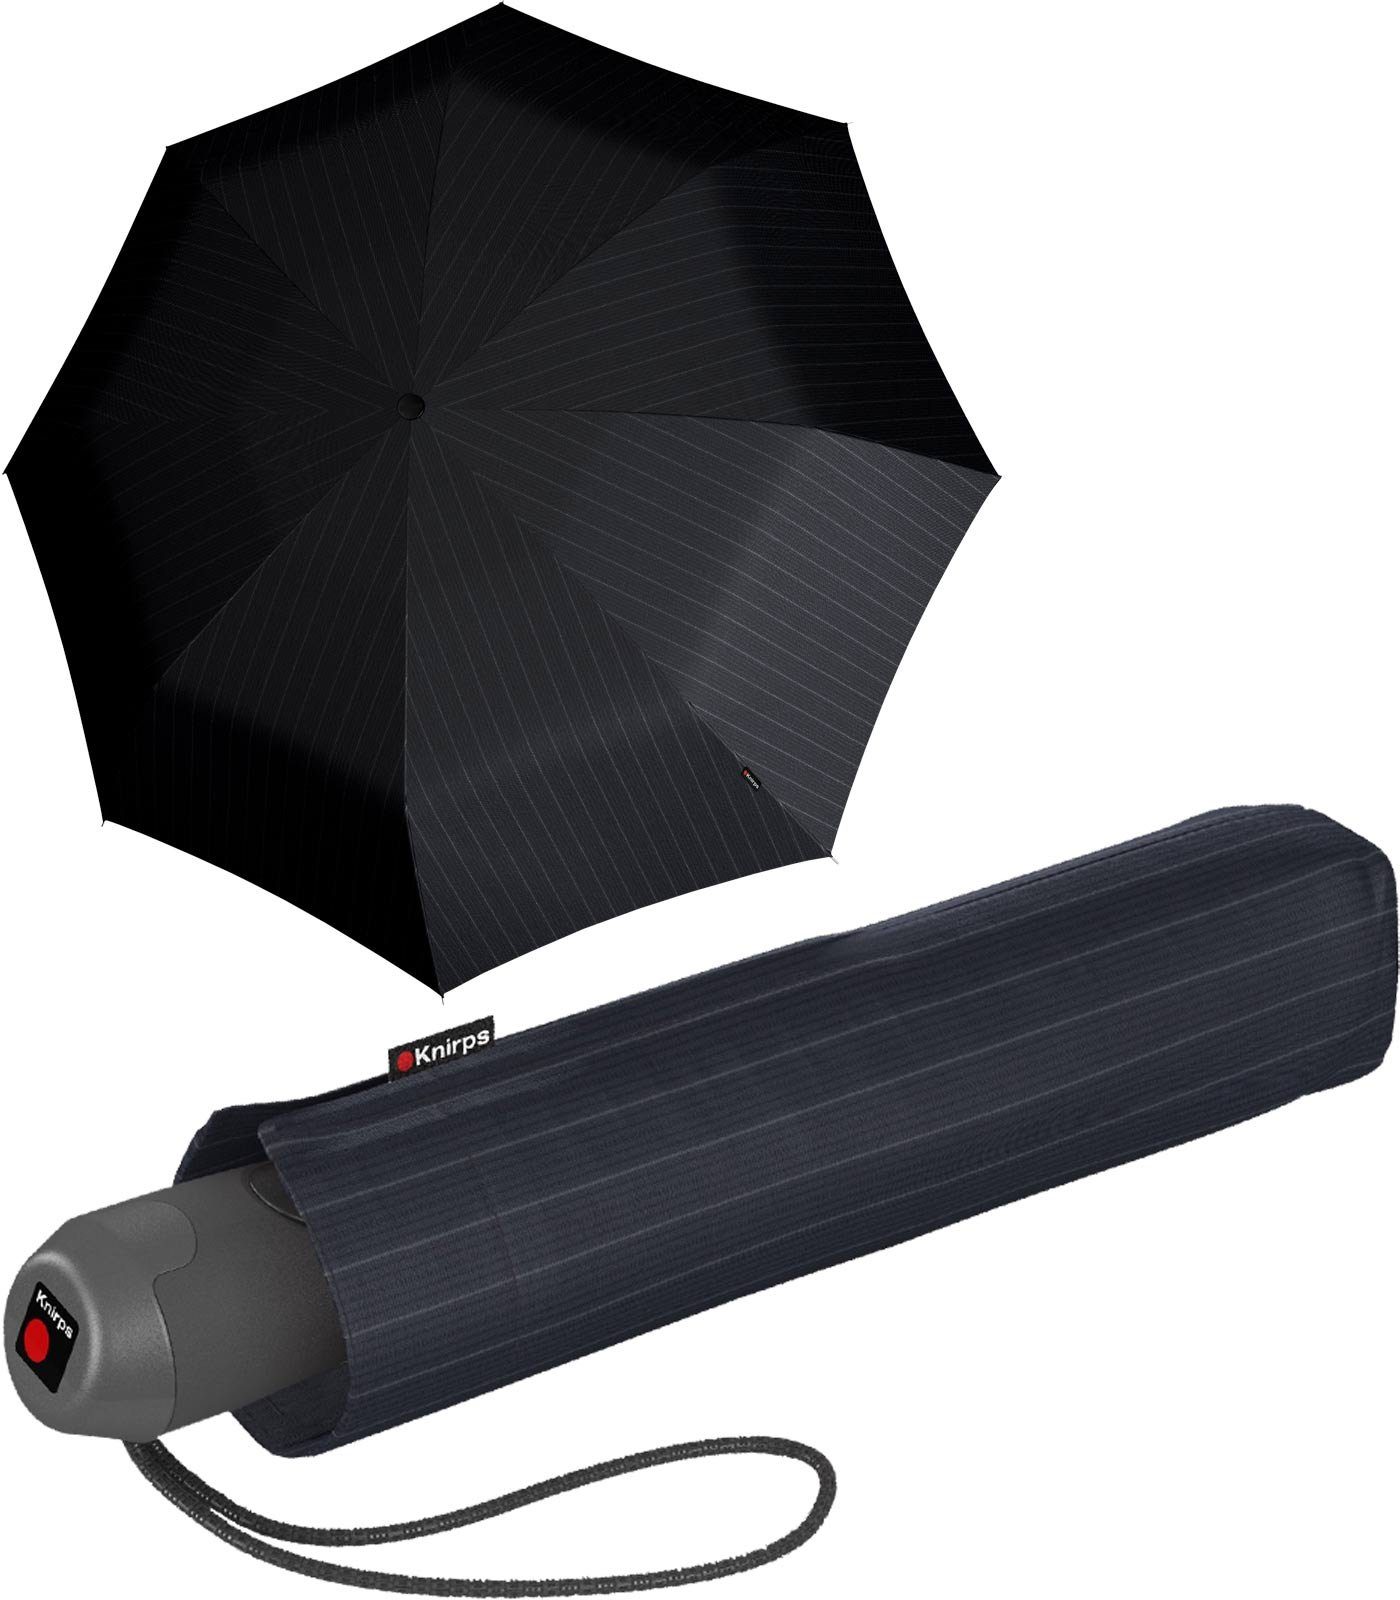 mit Auf-Zu-Automatik, Taschenregenschirm edel Geschenkverpackung besonders stabiler, Knirps® mit Schirm leichter